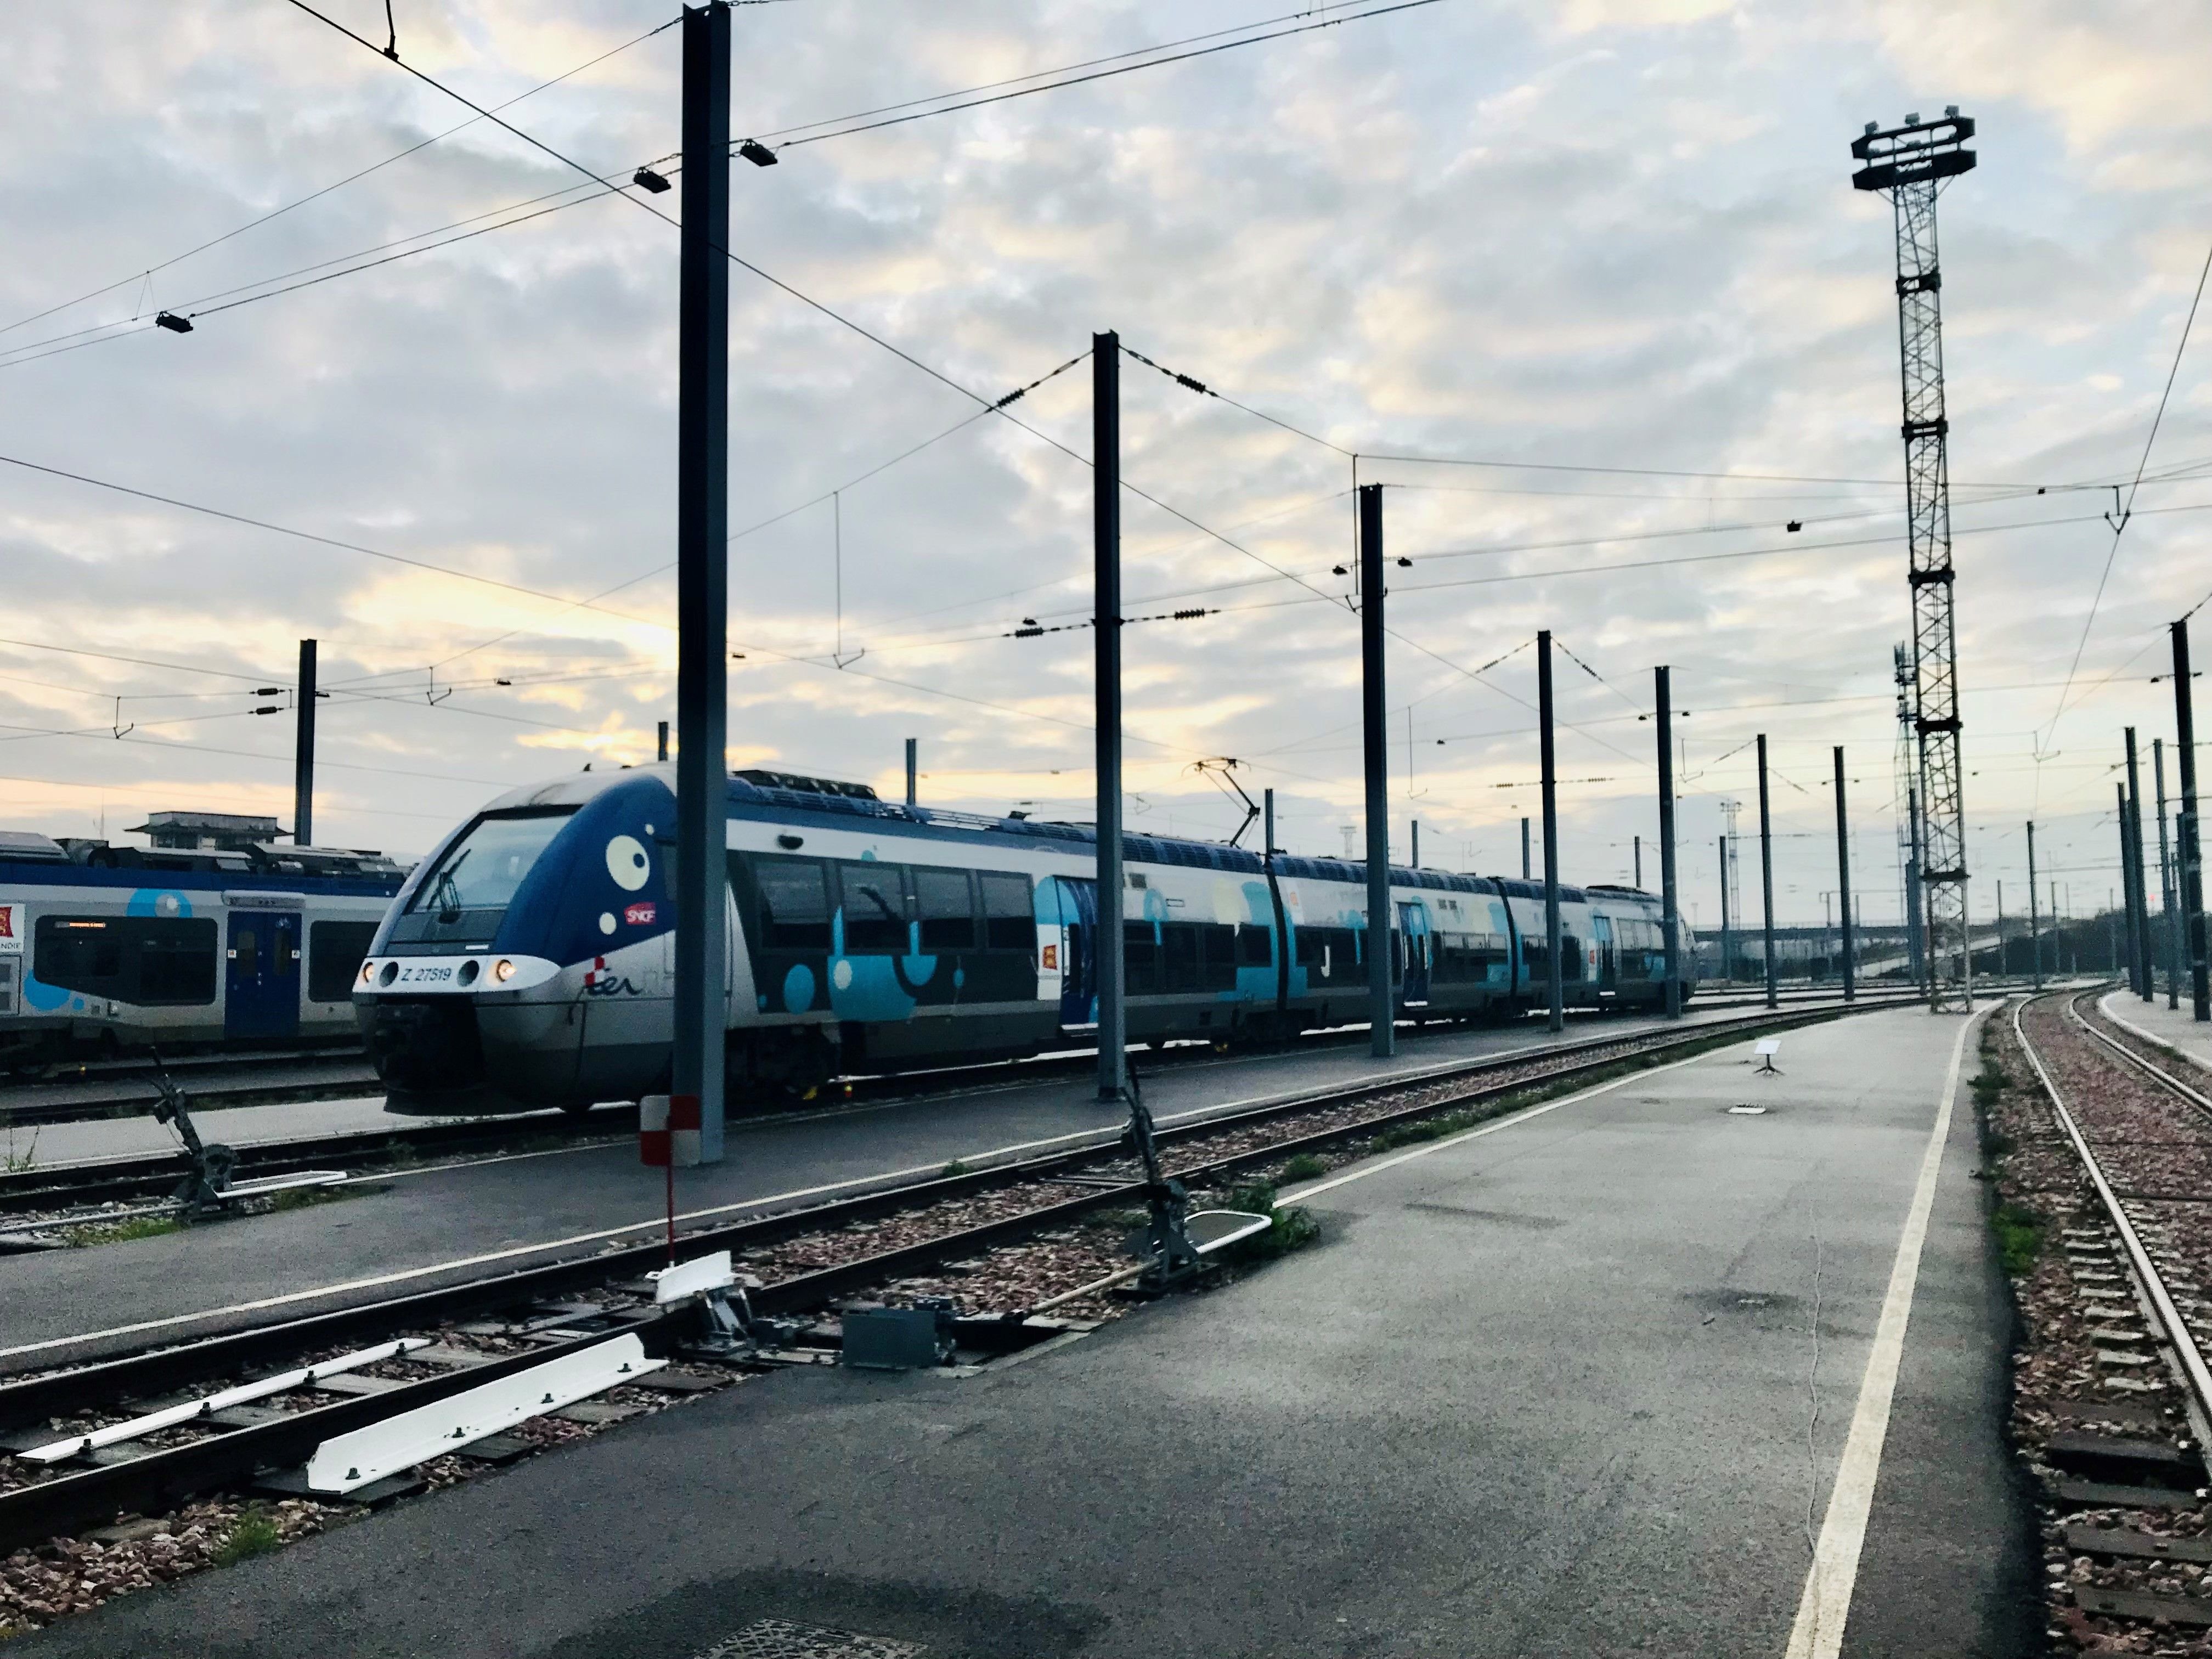 Longue de six kilomètres, la ligne rénovée permettrait à un millier de voyageurs par jour de rallier Louviers à Rouen et inversement, en trente minutes, à raison d'un train par heure. #Presse30